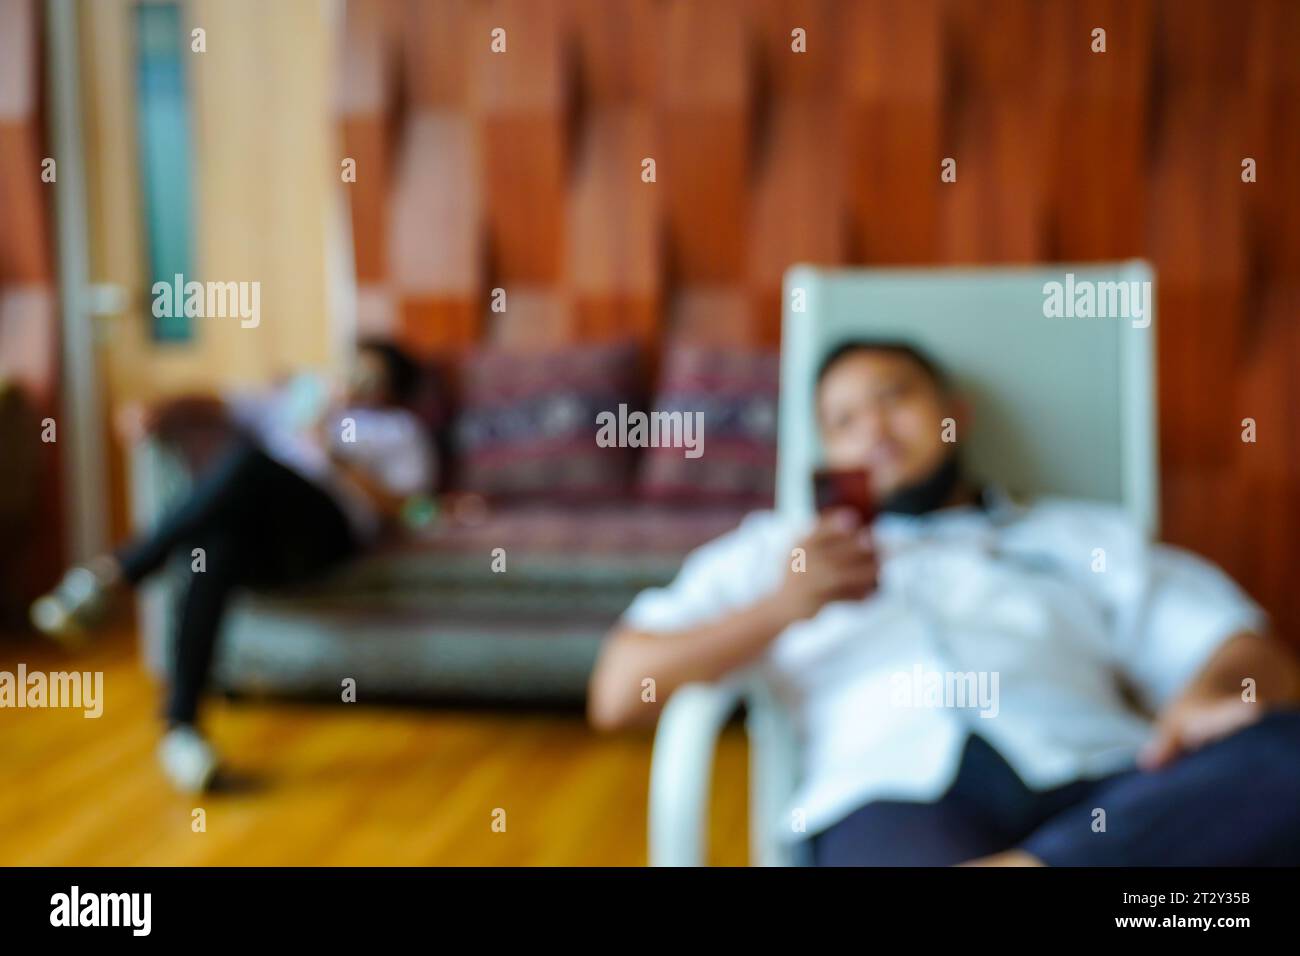 Eine faszinierende Unschärfe-Komposition, die die dynamische Szene zweier Männer einfängt, die auf Stühlen und einem Sofa sitzen, ihre Smartphones benutzen Stockfoto